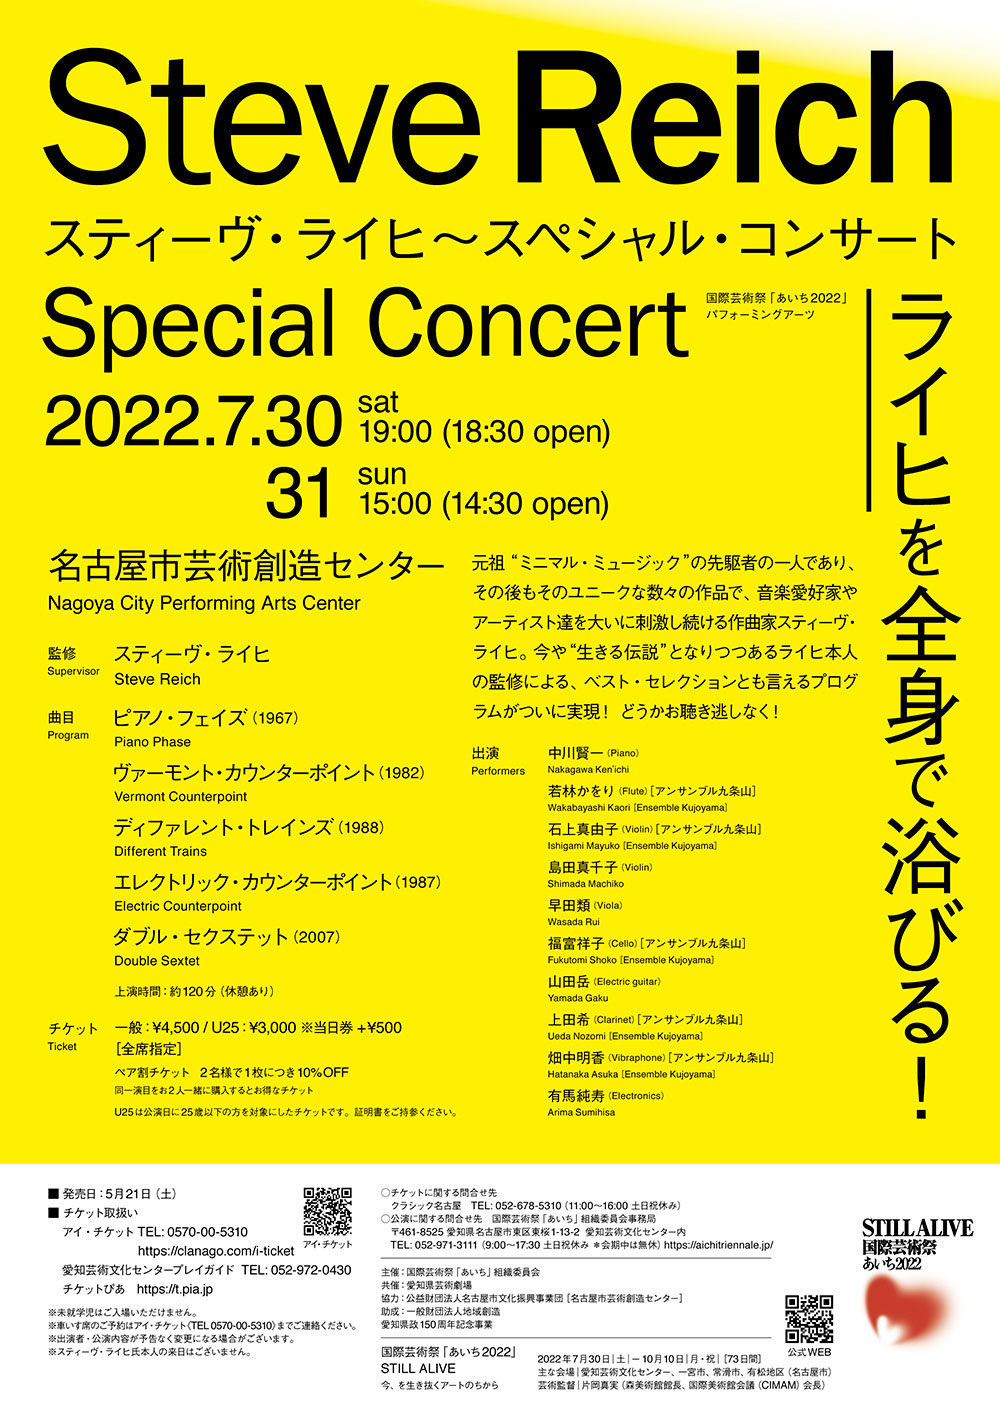 スティーヴ・ライヒ：Steve Reich Special Concert 2022.7.30(sat)〜7.31(sun)